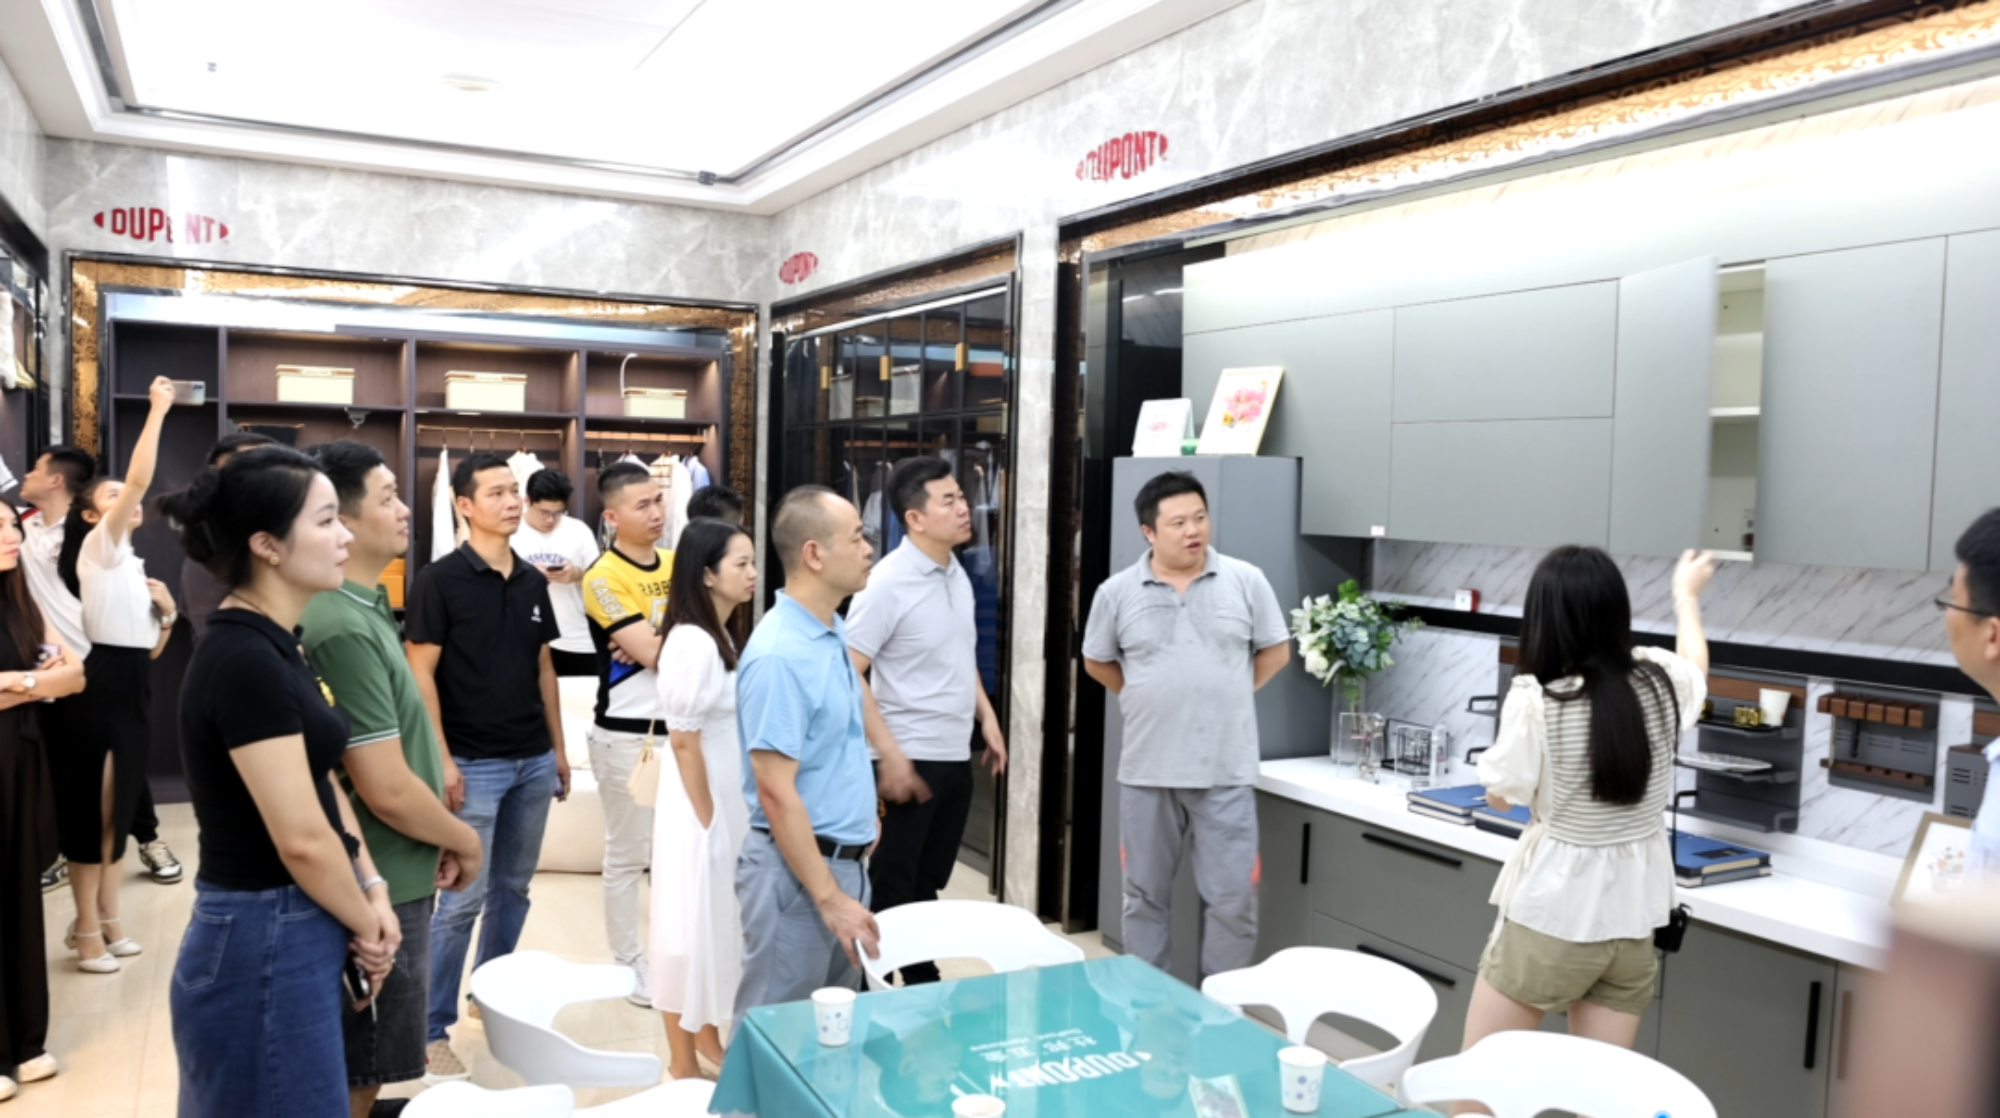 Informacje o sprzęcie ROEASY | Serdecznie witamy Zespół ds. kontroli i wymiany komisji ds. kontroli i wymiany Izby Handlowej ds. materiałów budowlanych Guangdong Home w naszej firmie w celu odwiedzenia i wymiany